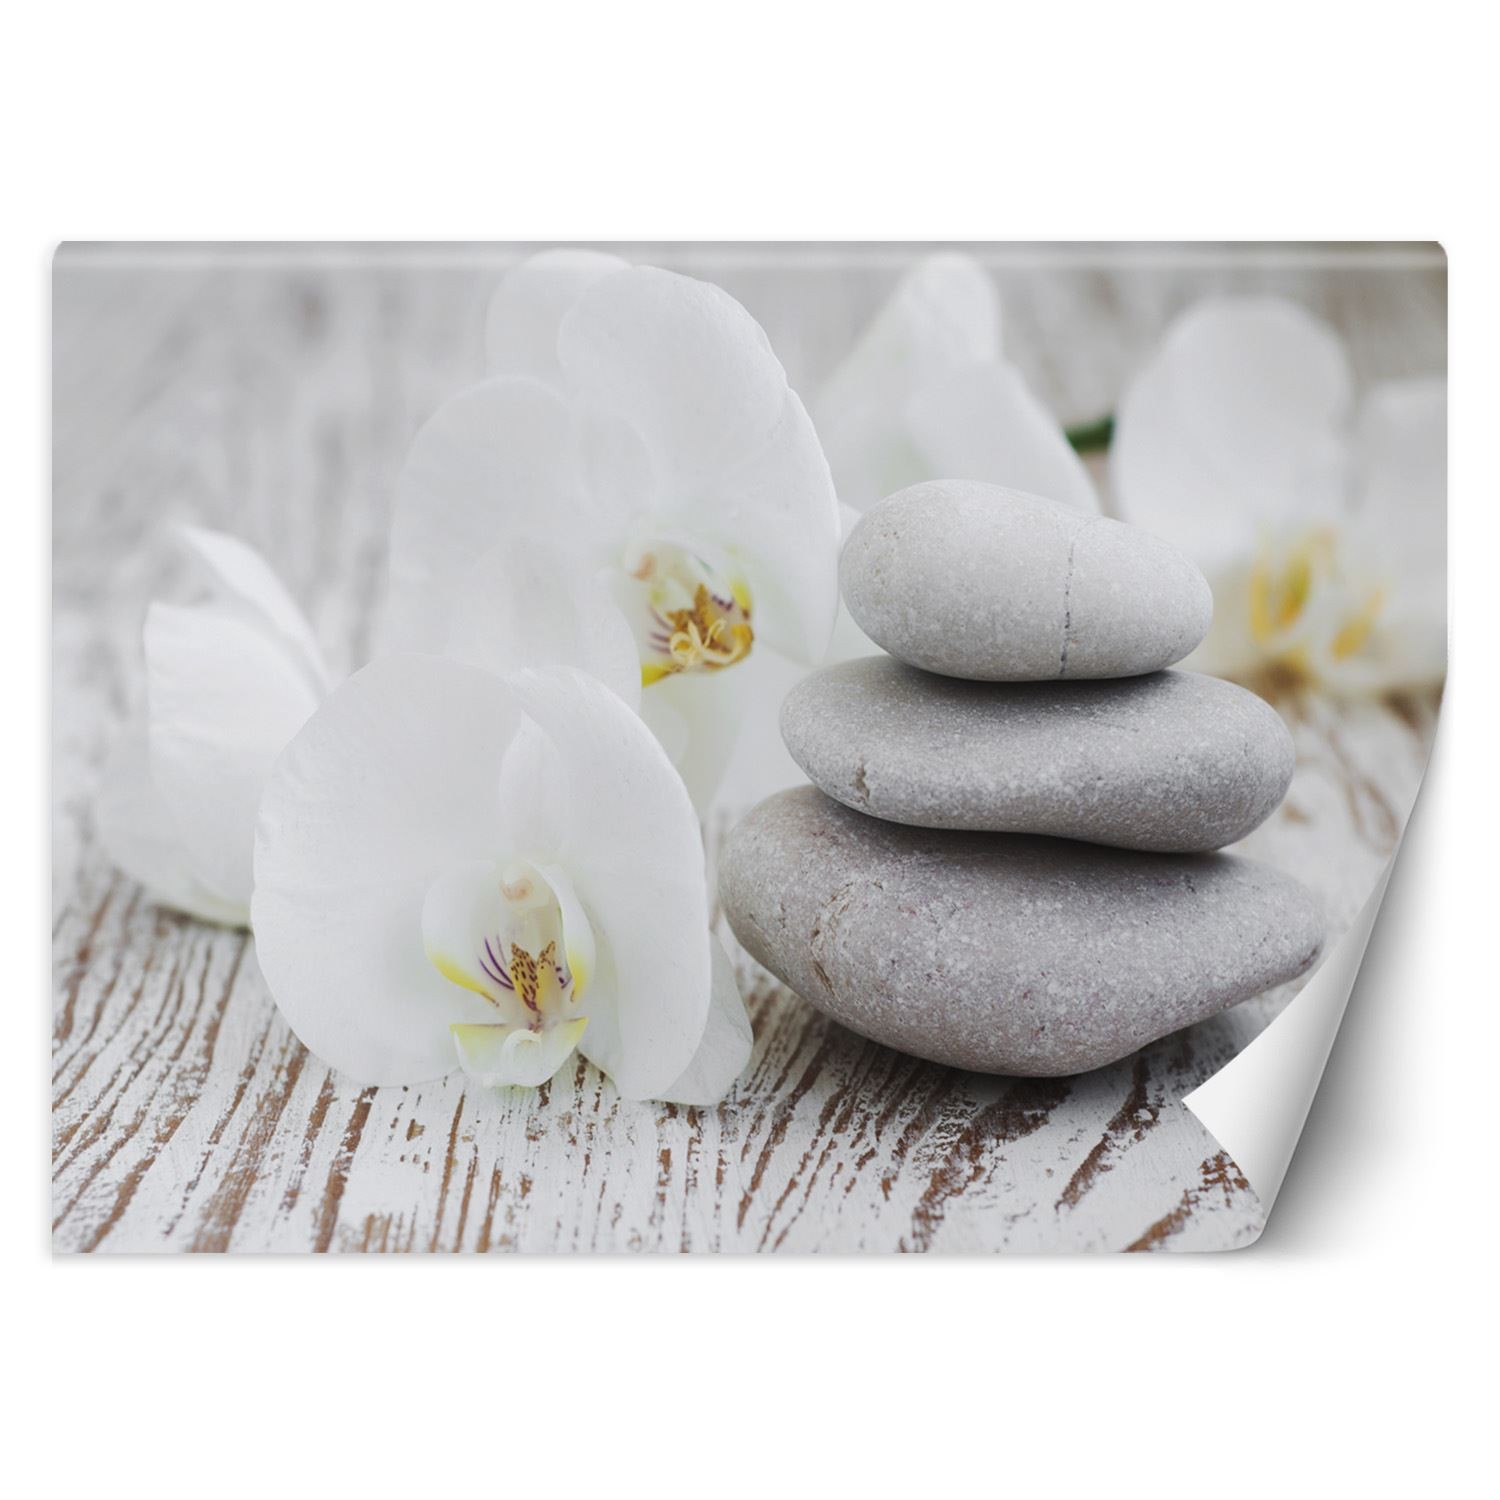 Trend24 – Behang – Flowers & Zen Stones – Vliesbehang – Fotobehang – Behang Woonkamer – 350×245 cm – Incl. behanglijm